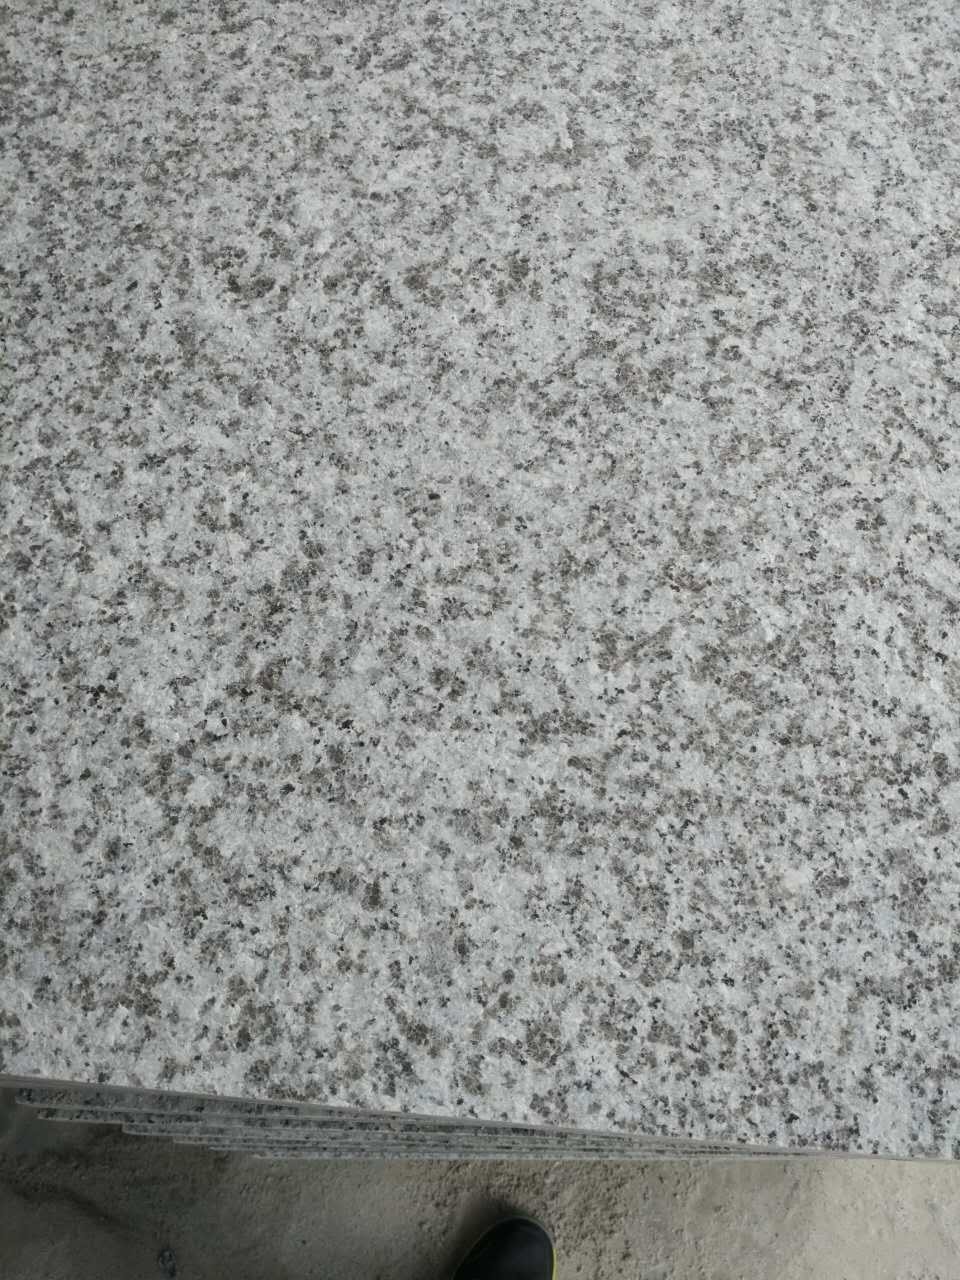 G439 granite stone pavement